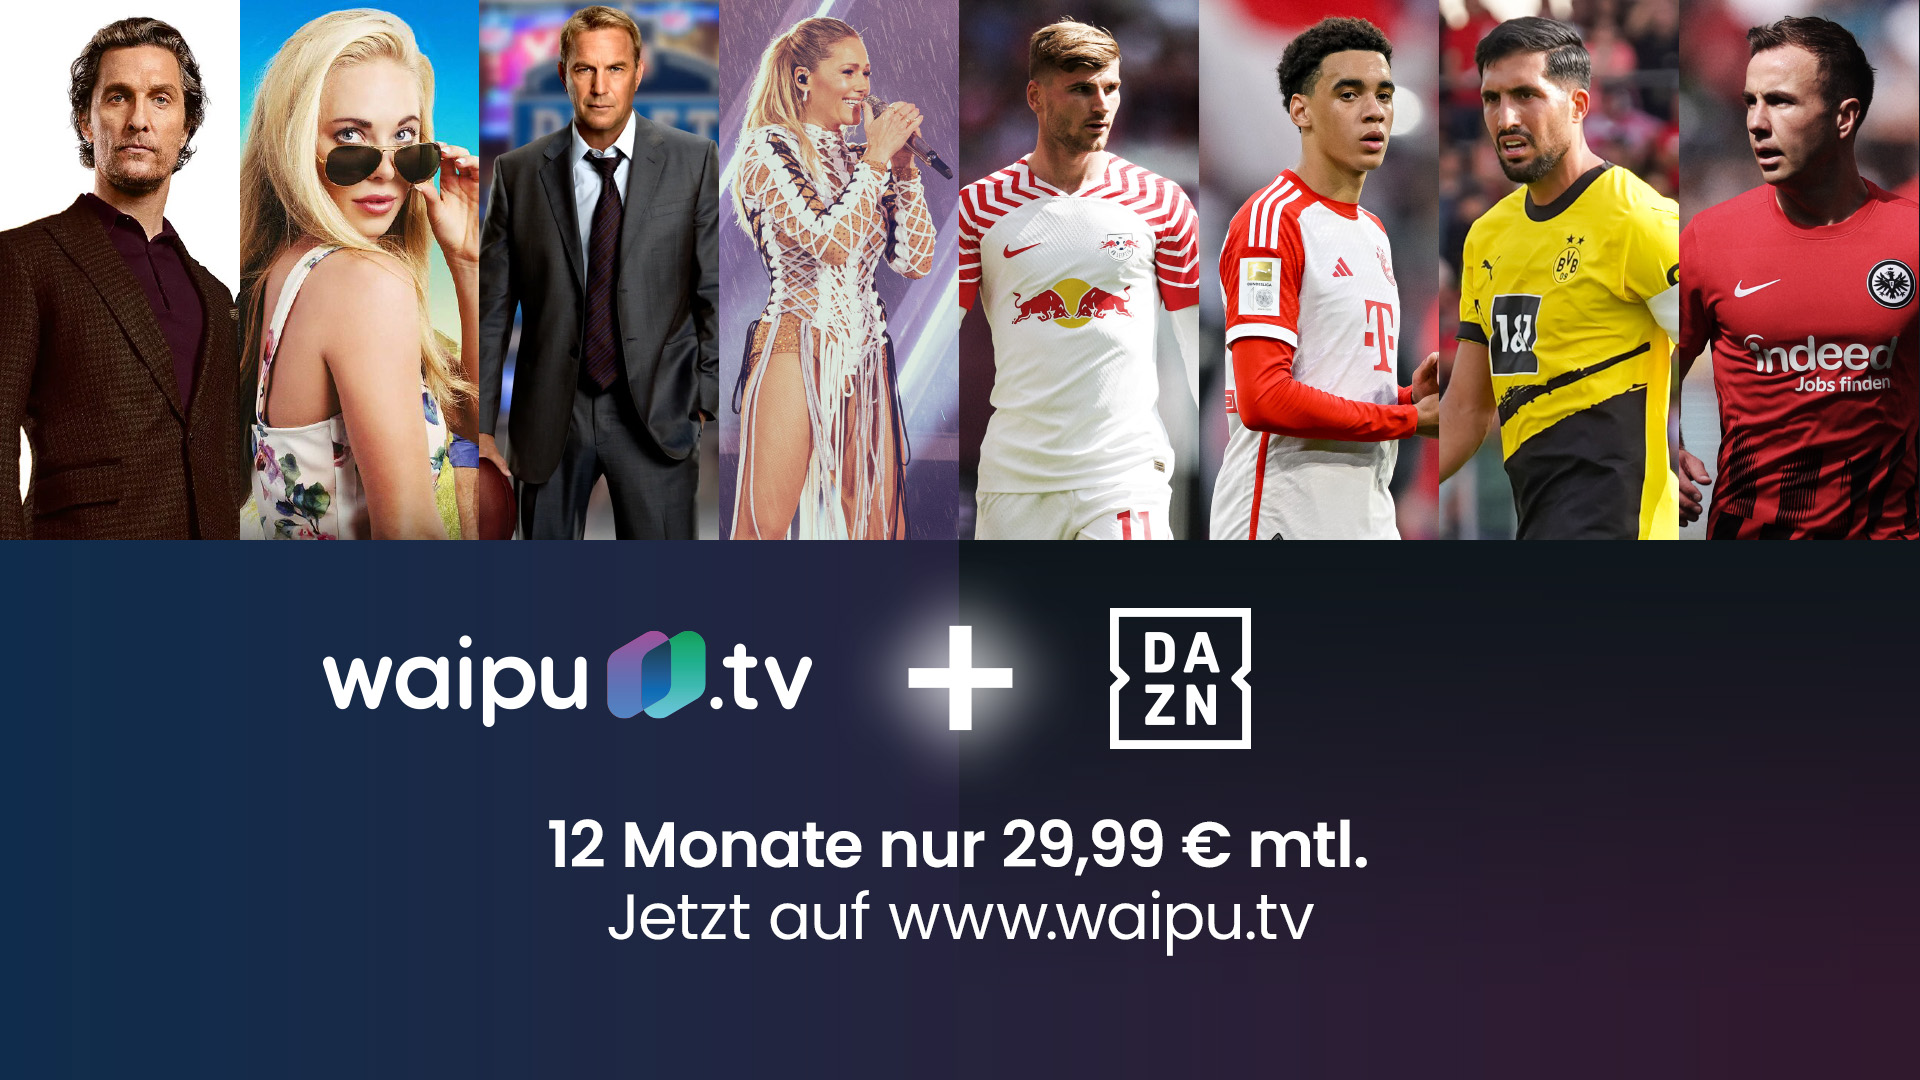 Rabatt mit Prozent 25 DAZN launcht UNLIMITED-Angebot neues waipu.tv